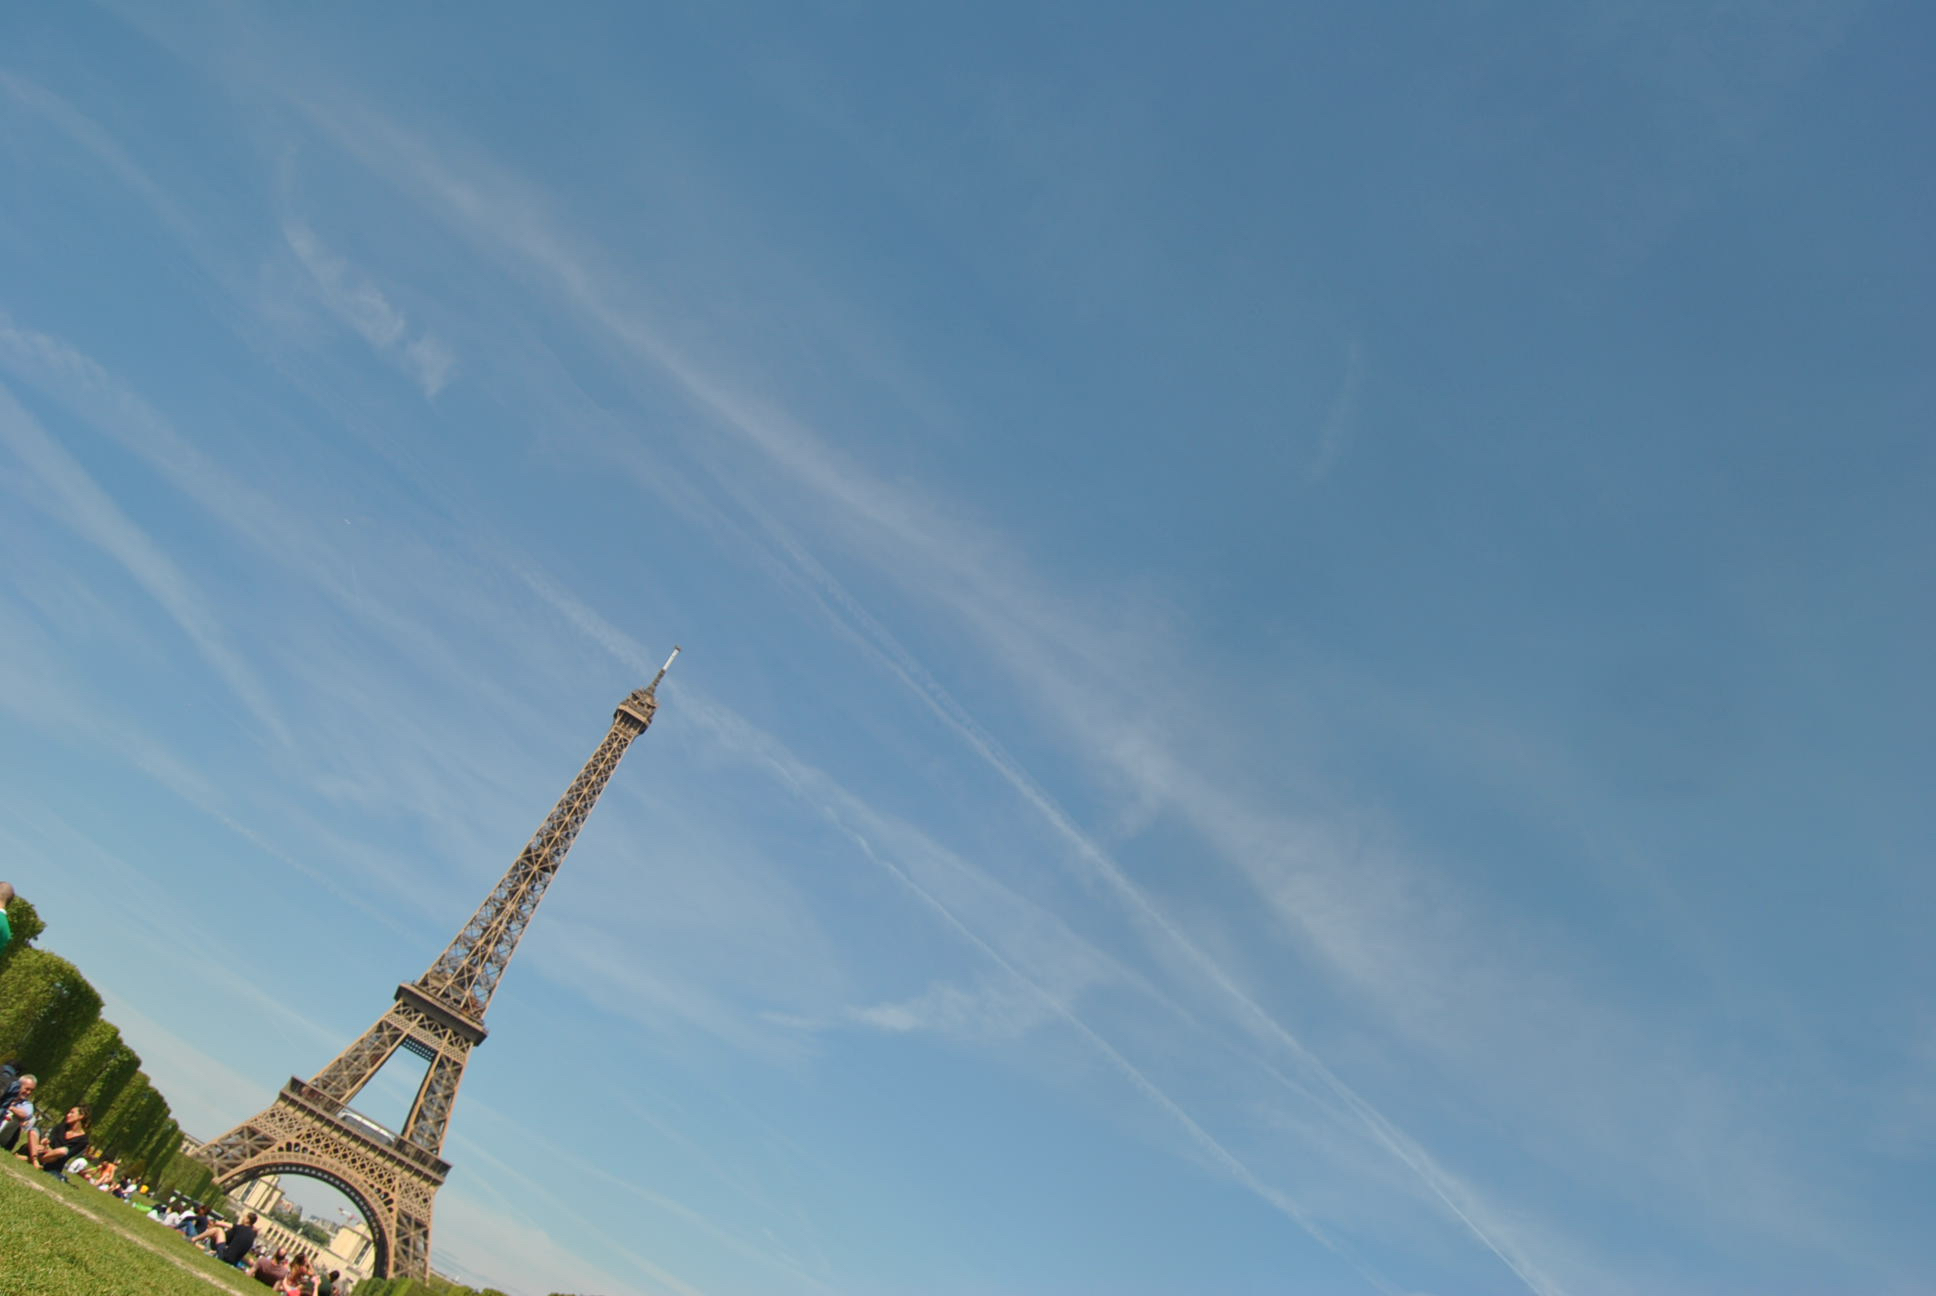 10 Good places to eat around the Eiffel Tower, No Tourist Traps!